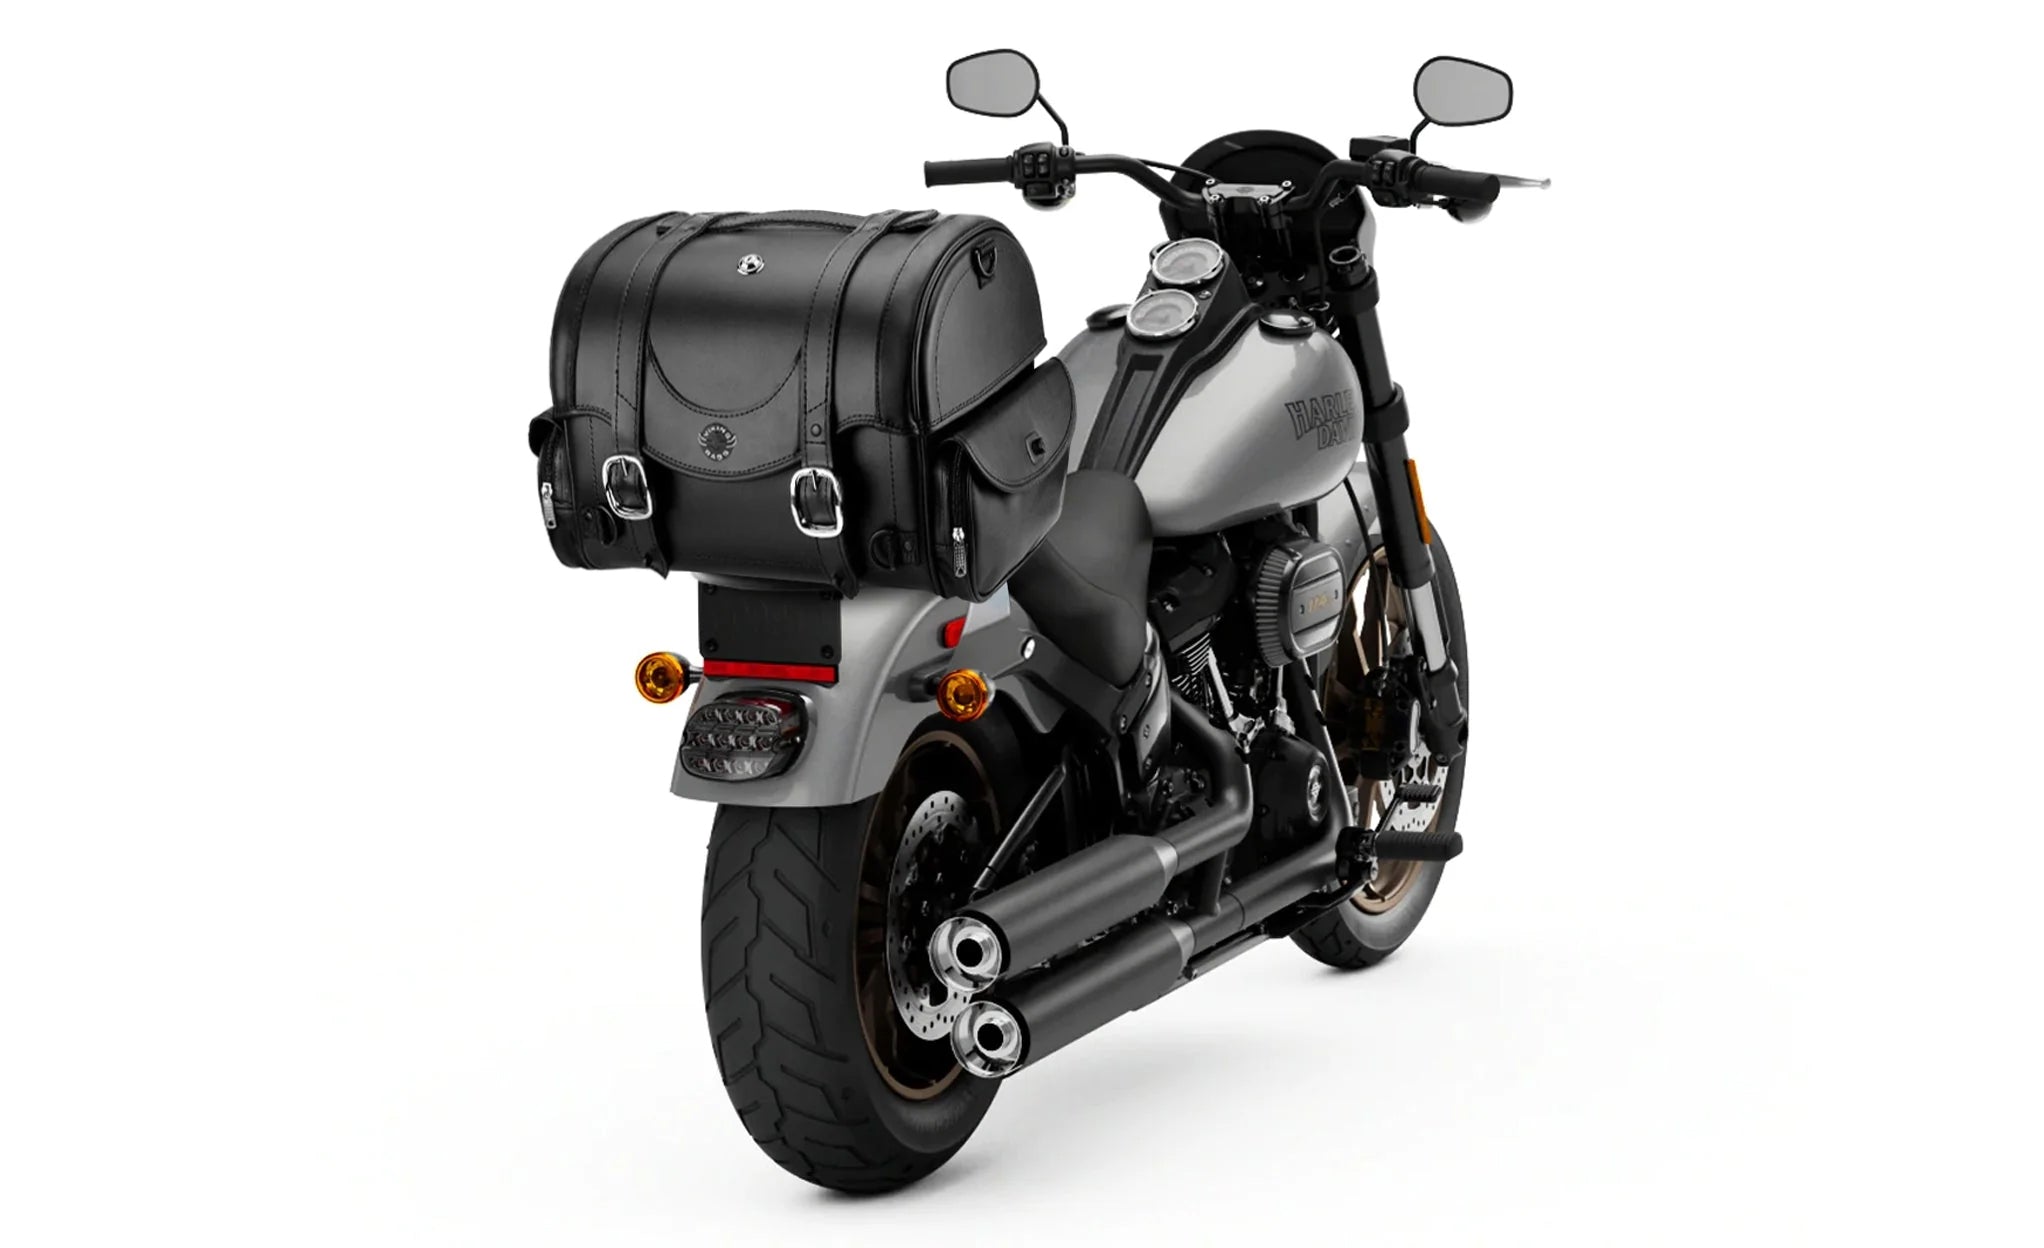 21L - Century Medium Yamaha Leather Motorcycle Trunk Bag on Bike Photo @expand